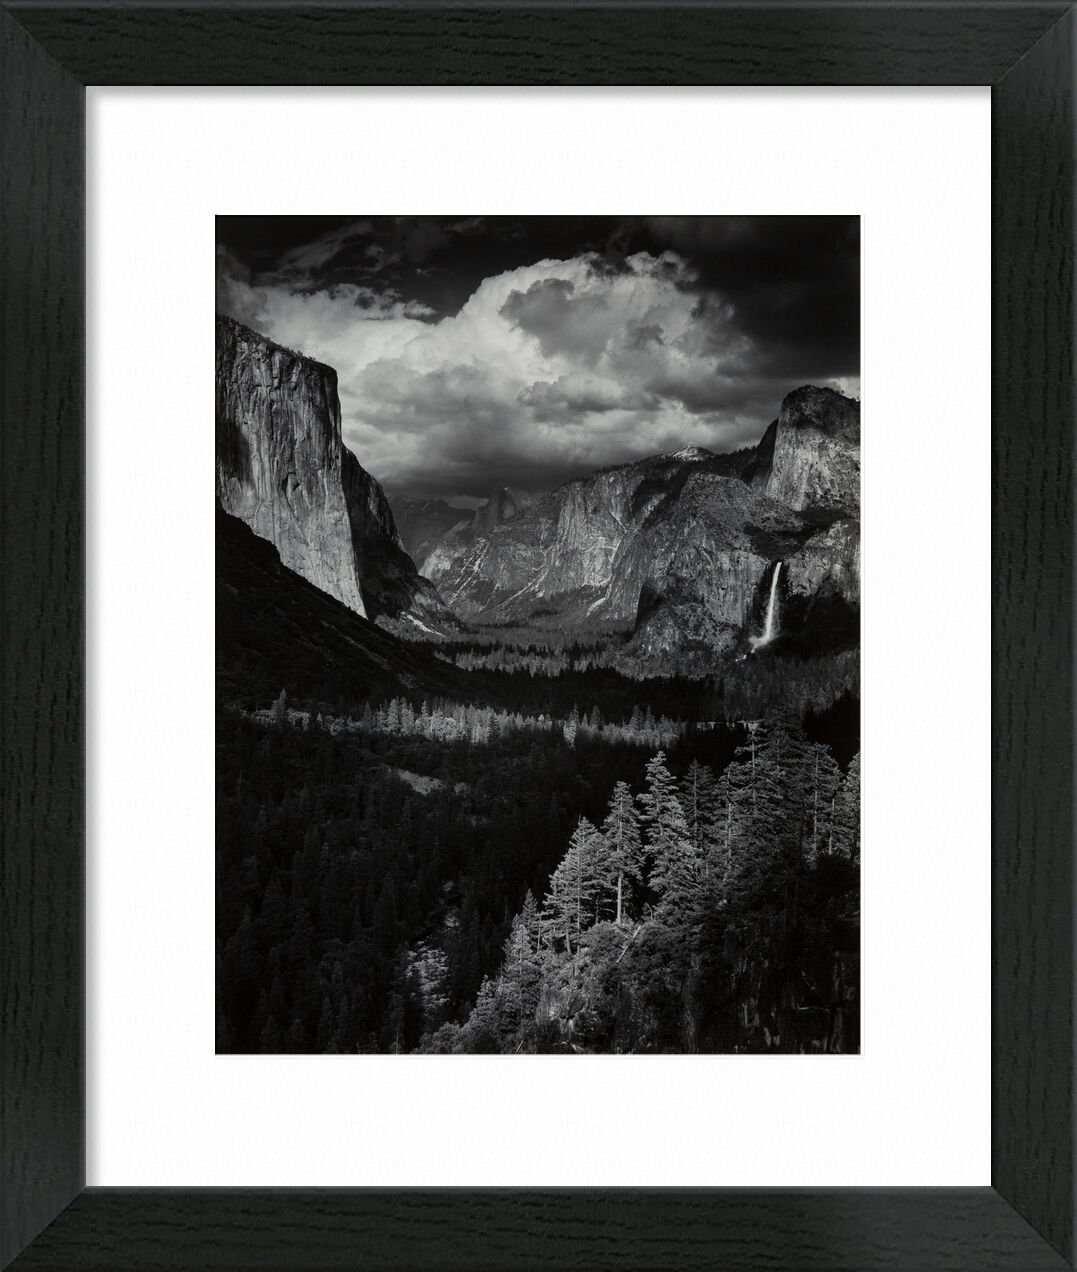 Gewitter, Yosemite Valley, Kalifornien, 1945 - Ansel Adams von Bildende Kunst, Prodi Art, ANSEL ADAMS, adams, Sturm, Berge, Tal, Wolken, Holz, Tannenbäume